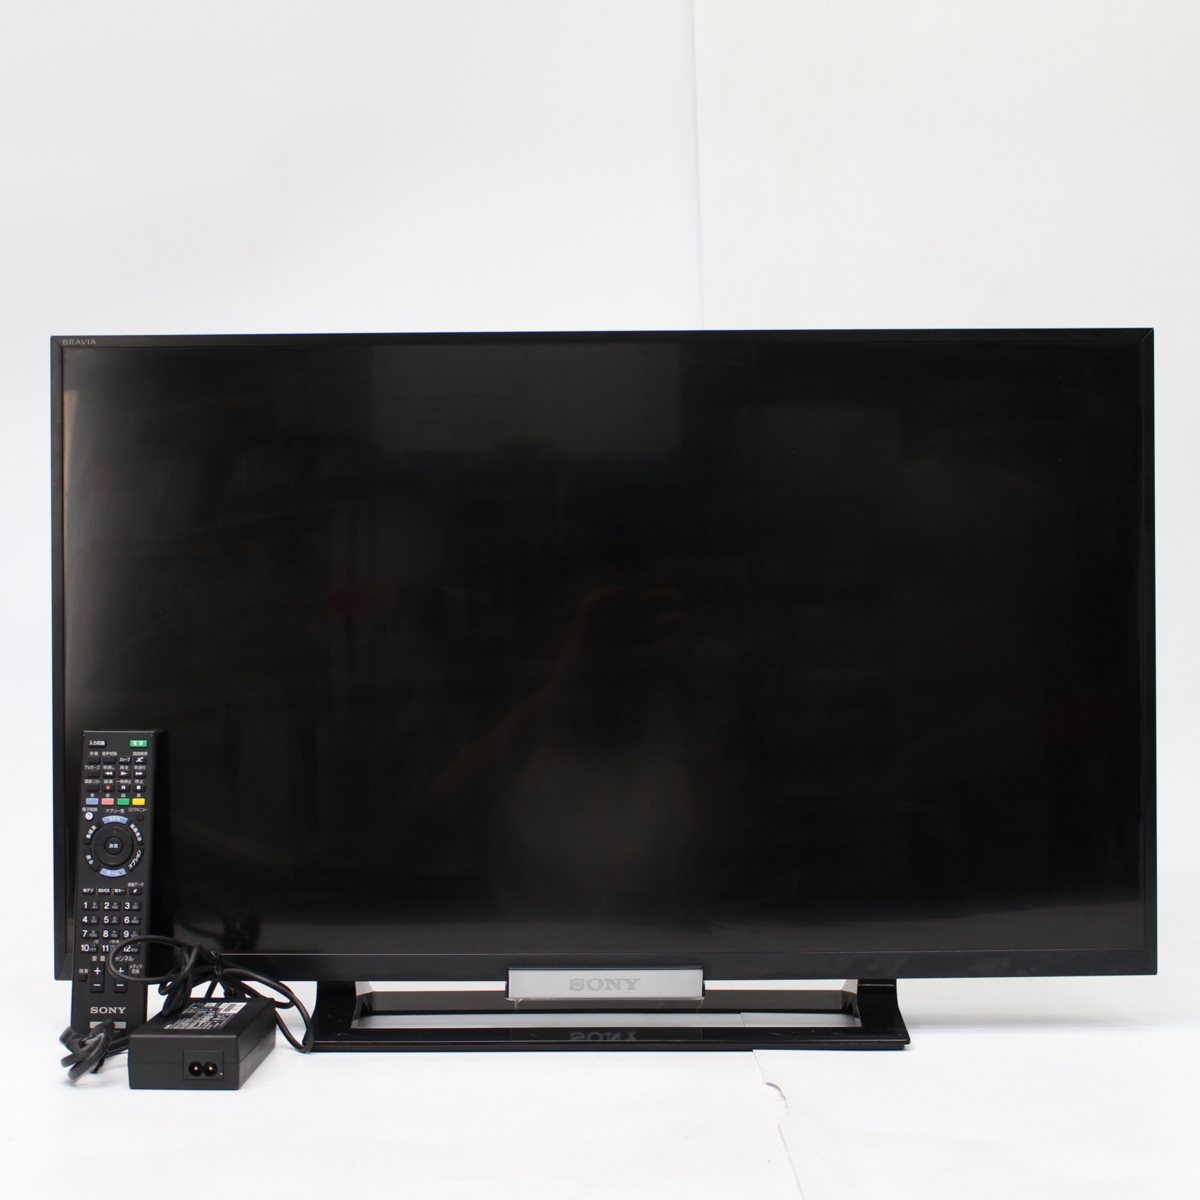 横浜市旭区にて ソニー ハイビジョン液晶テレビ KDL-32W500A 2014年製 を出張買取させて頂きました。